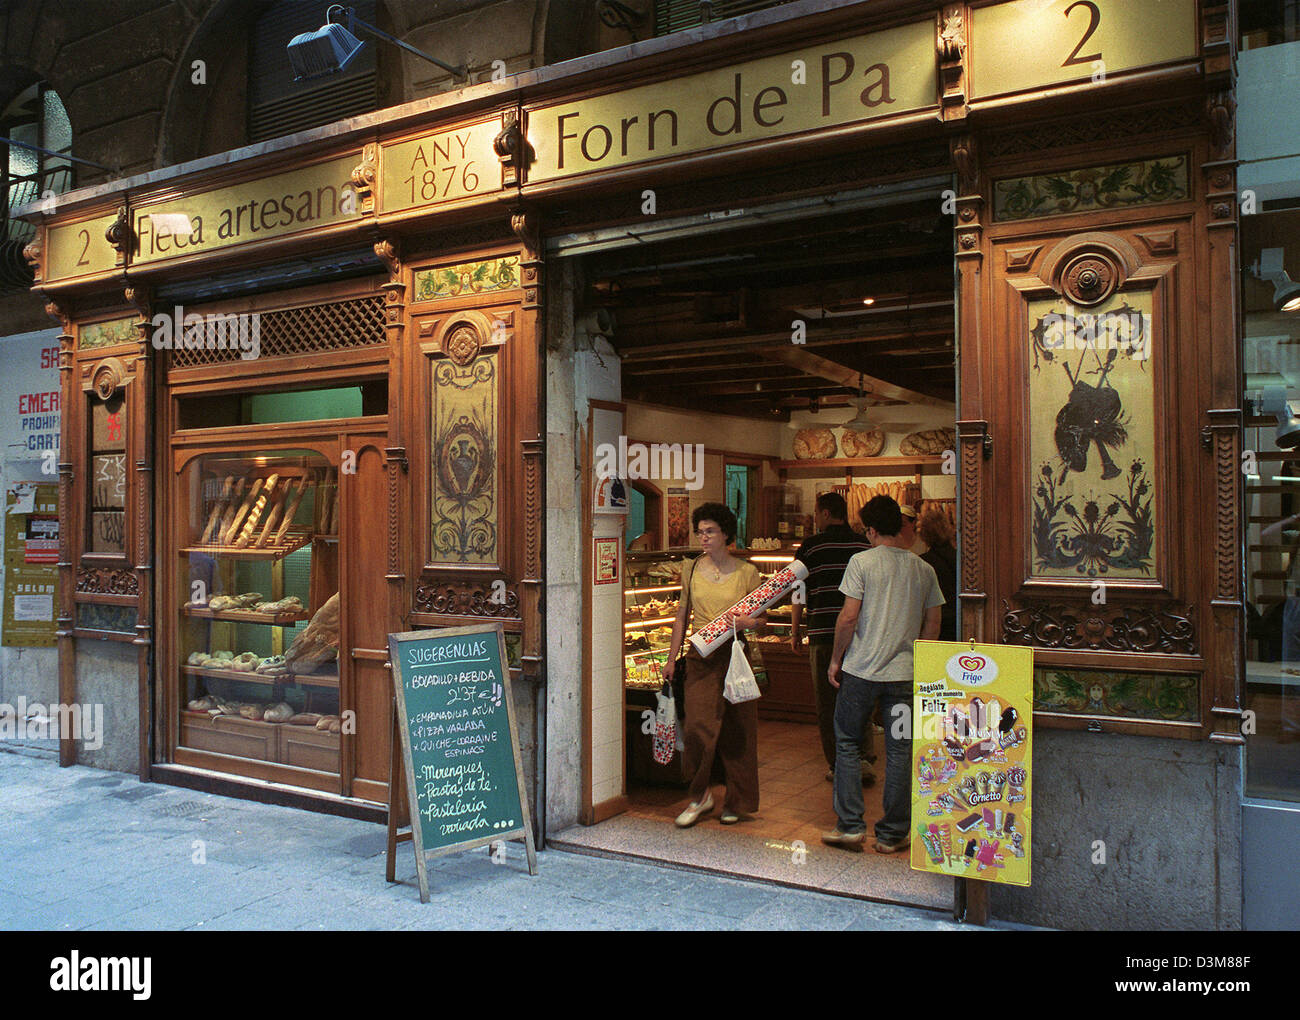 Archivo de datos (DPA) - La fotografía muestra una panadería con una fachada histórica en la calle Elisabets, en la esquina de la Rambla de Canaletes, en Barcelona, España, 13 de junio de 2002. Foto: Thorsten Lang Foto de stock